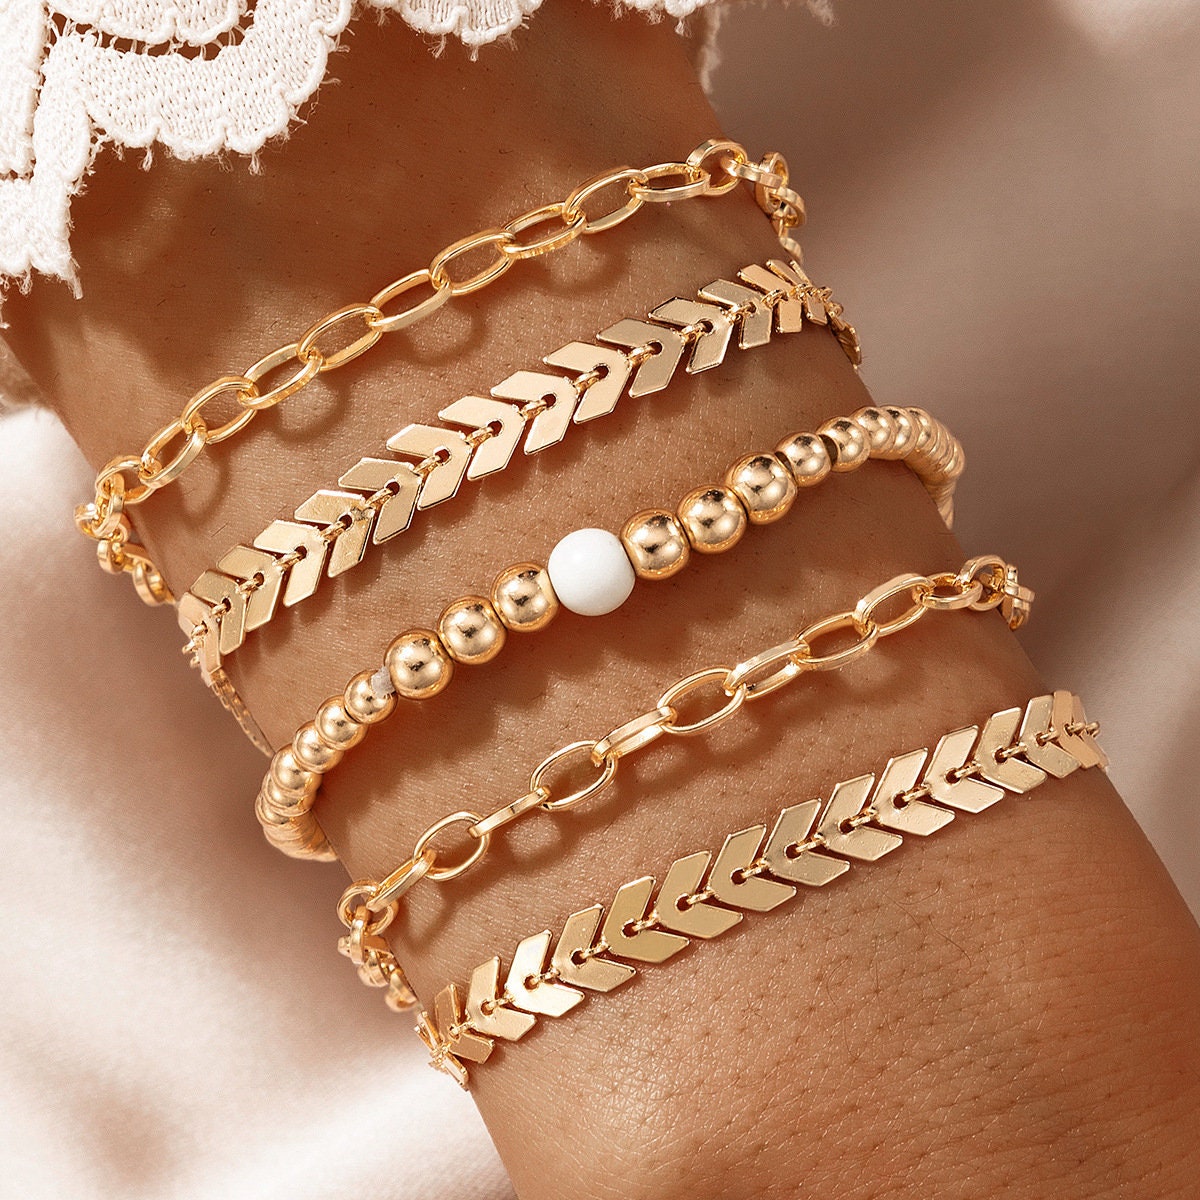 29 Best Gold bracelet for girl ideas